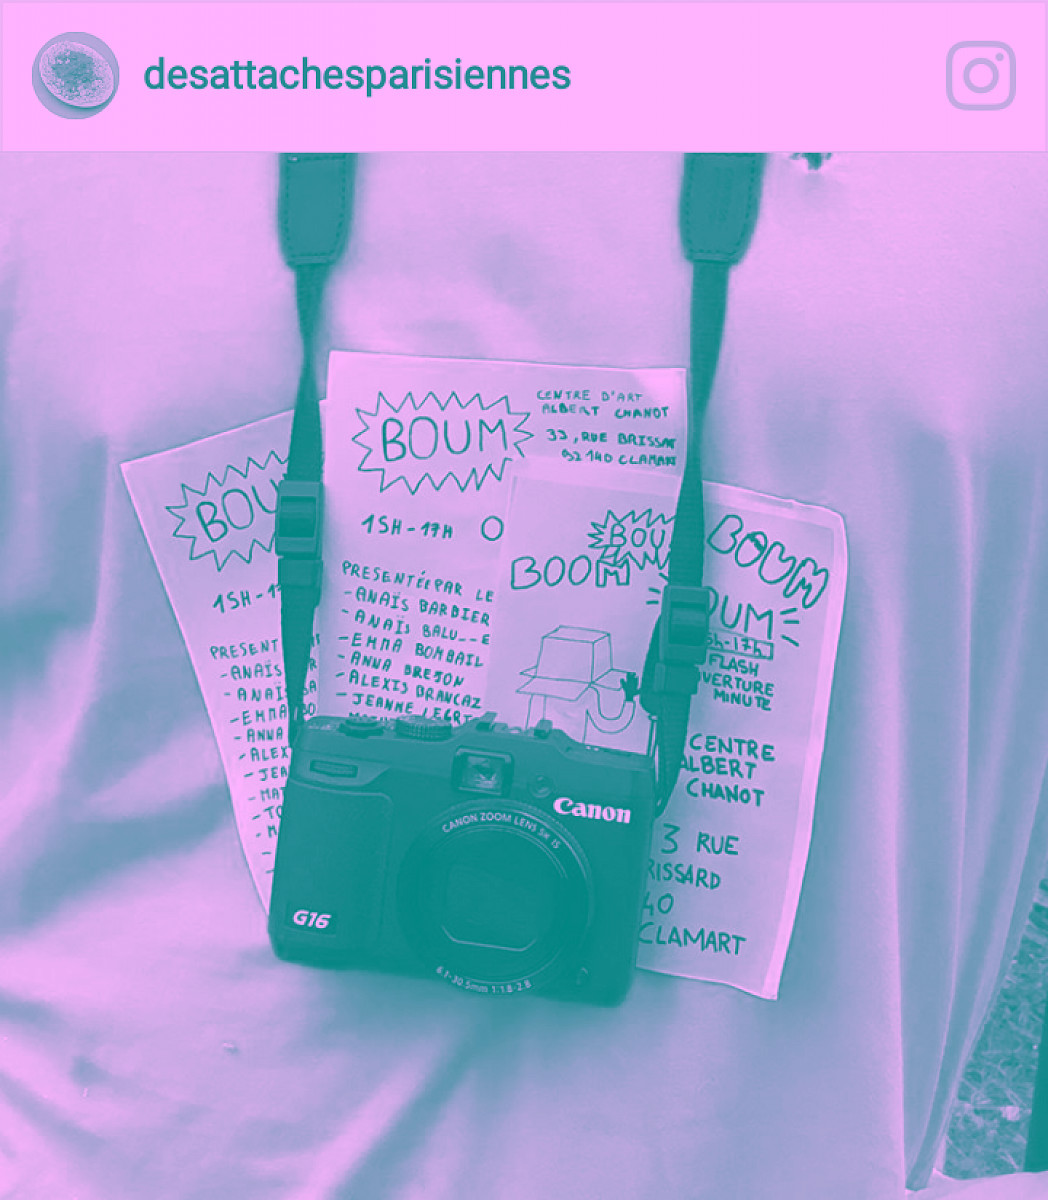 post Instagram des textes et appareil photo, flyer exposition